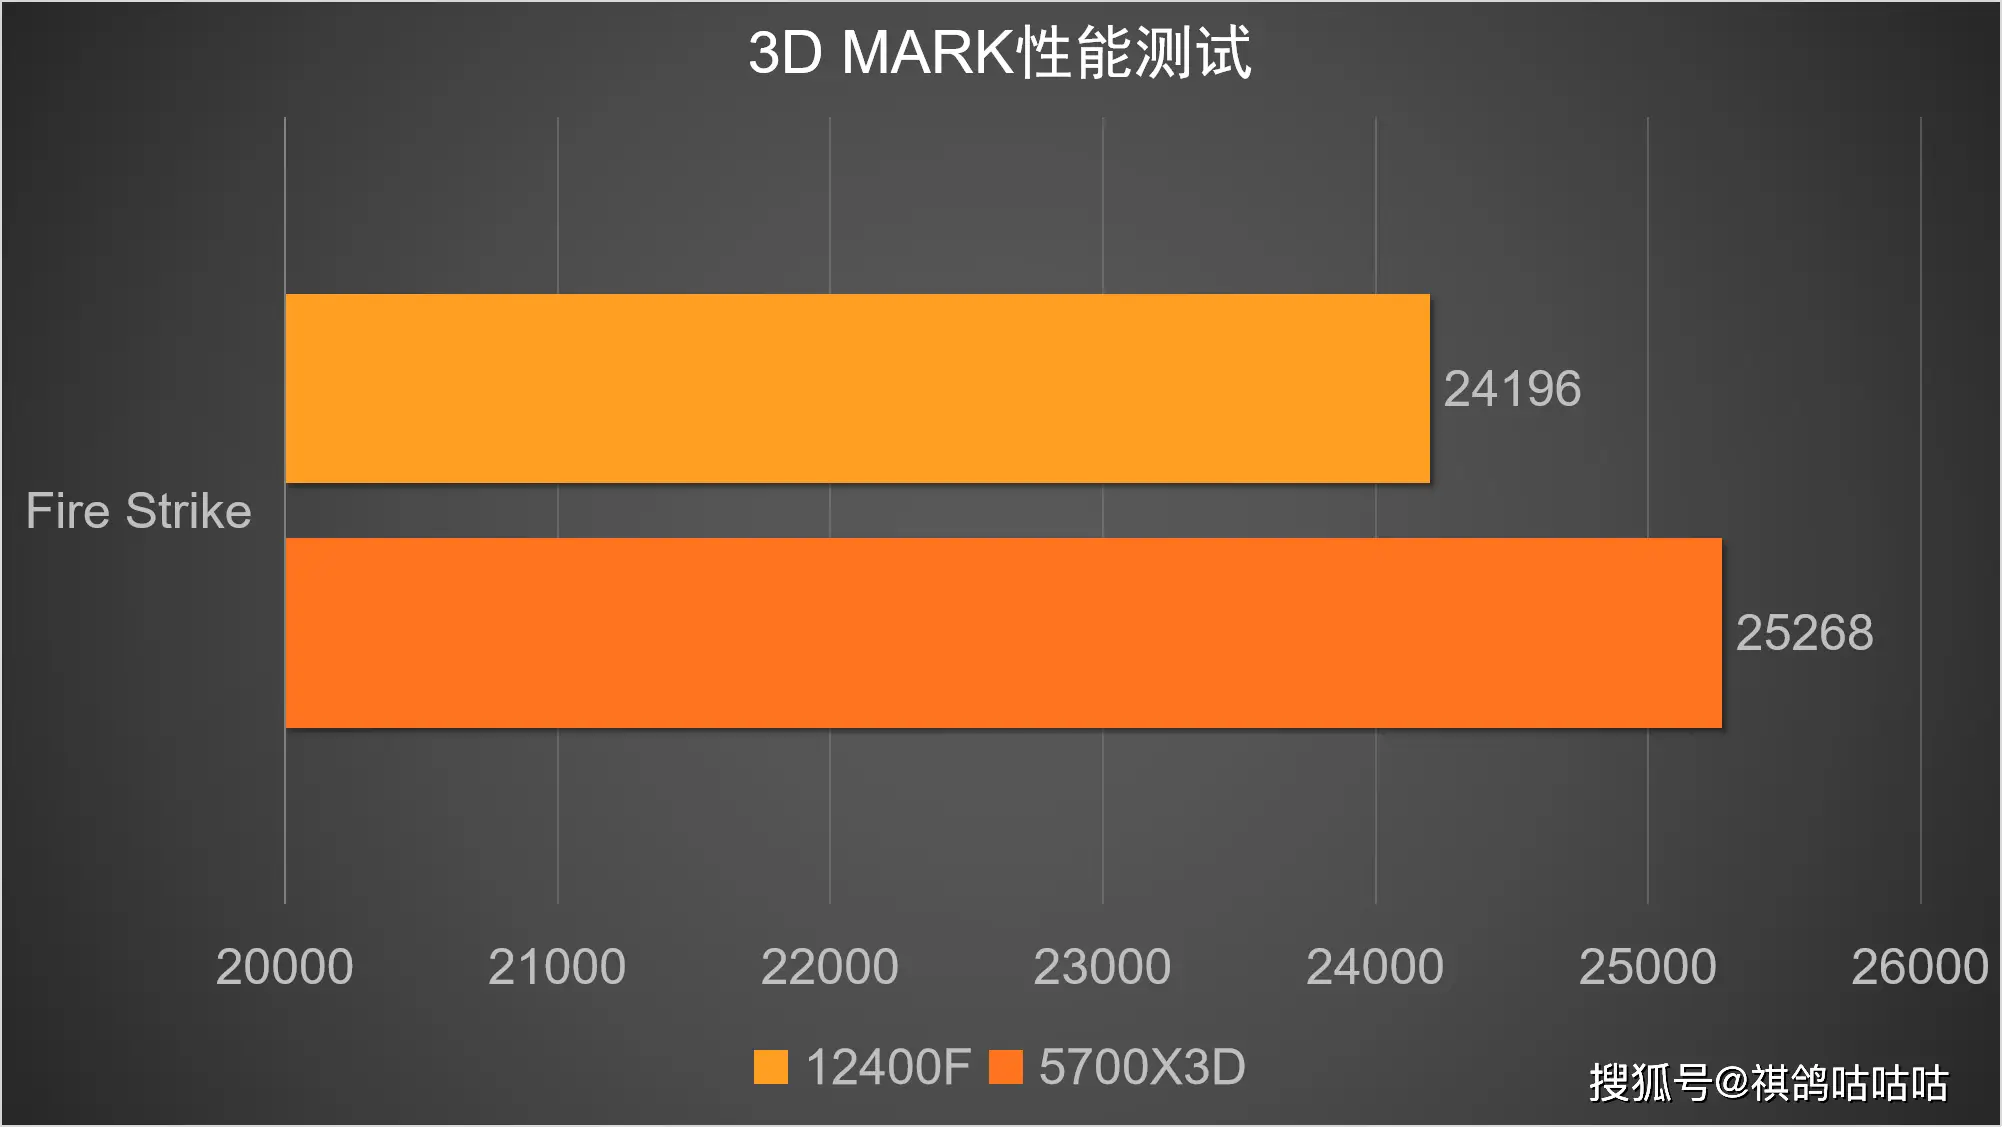 2015 年 DDR4 内存价格飙升的原因及影响  第3张